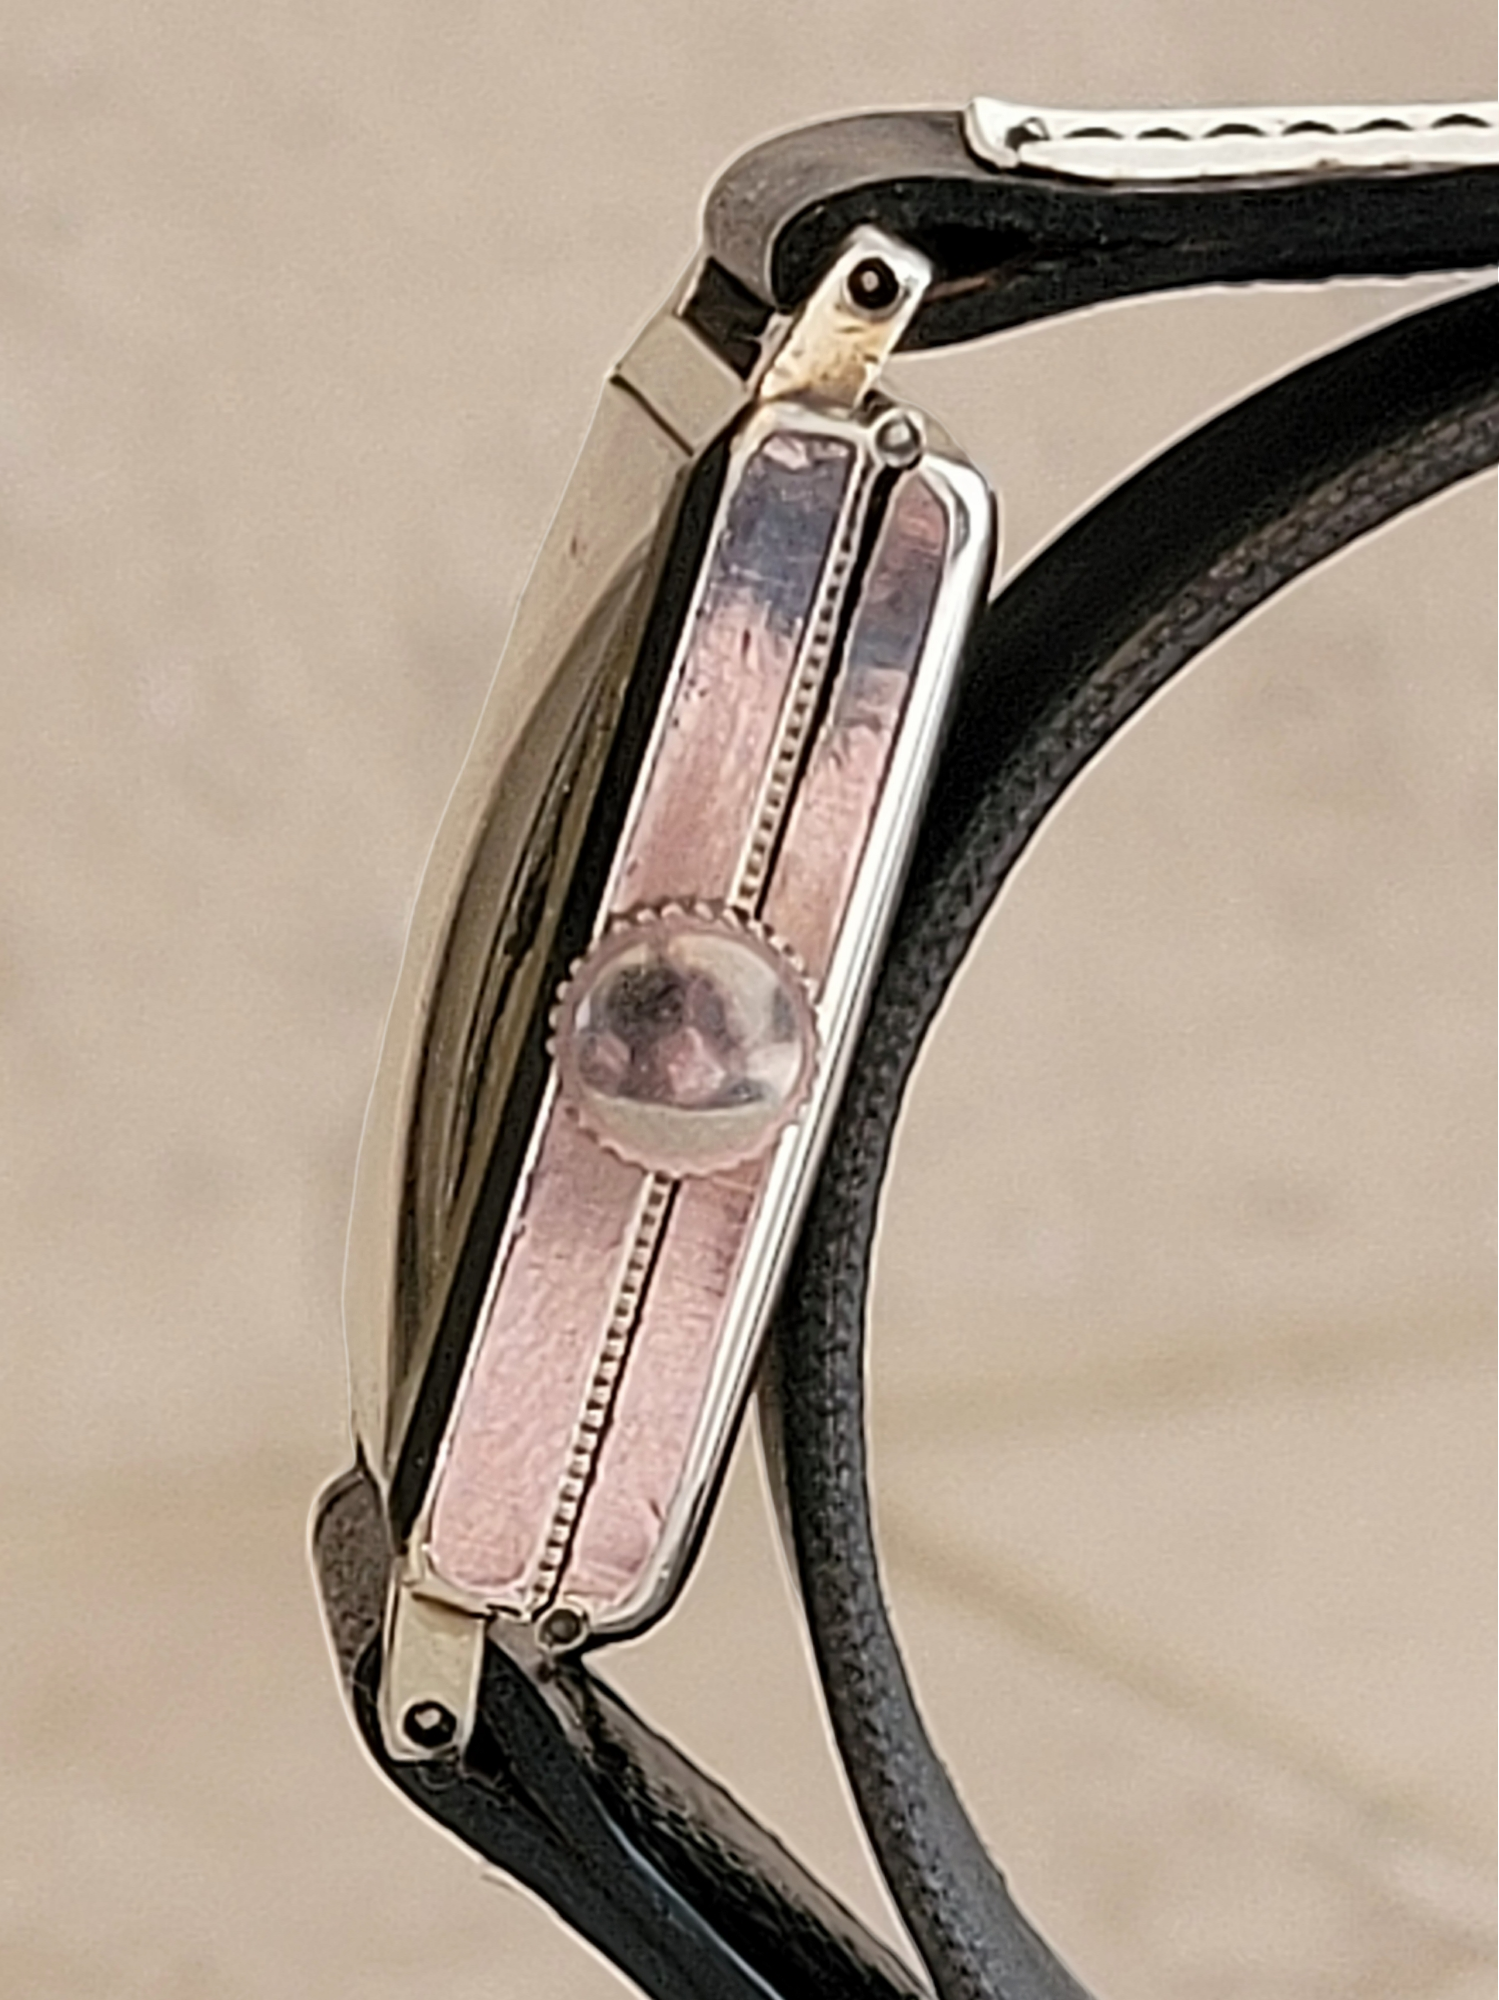 1930's CYMA Art Deco Wristwatch 15 Jewels Ref. 038 Swiss Made